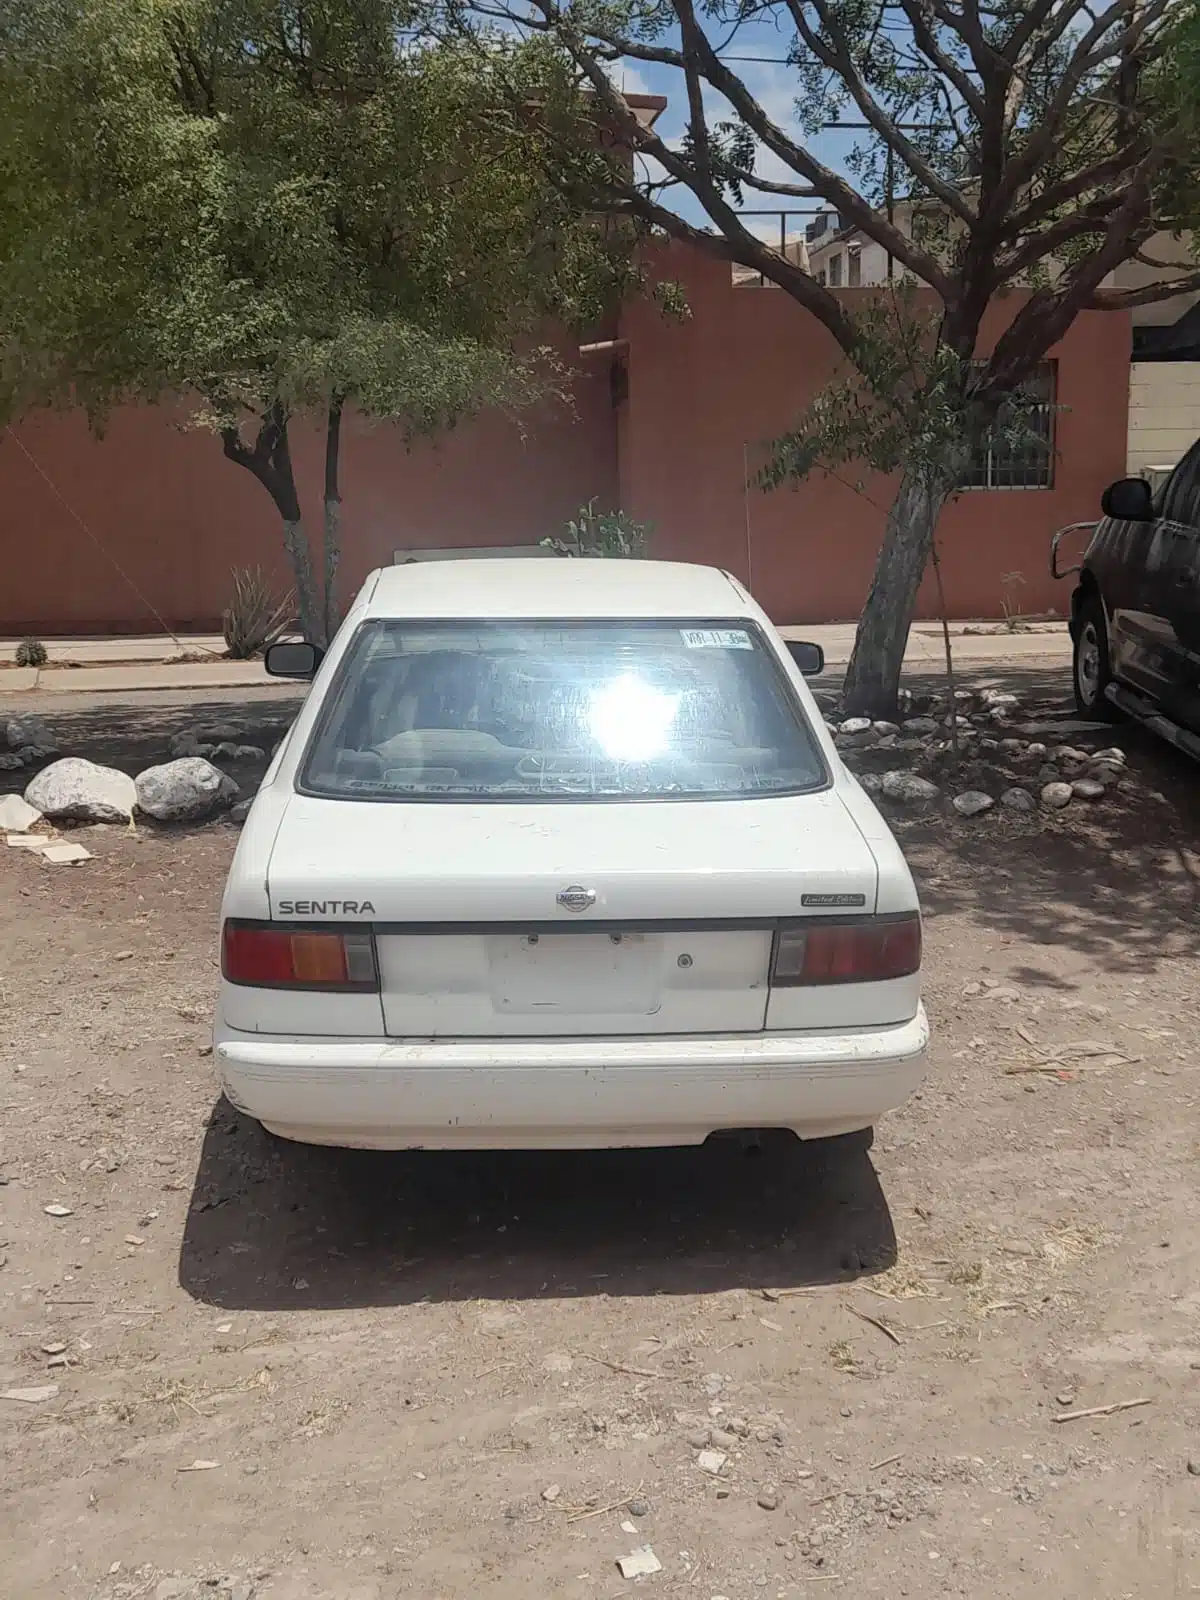 El vehículo es de la marca Nissan, tipo Sentra modelo 1994, color blanco, que es propiedad de Martha “U”, quien es residente del ejido Ignacio Allende, en el municipio costero.